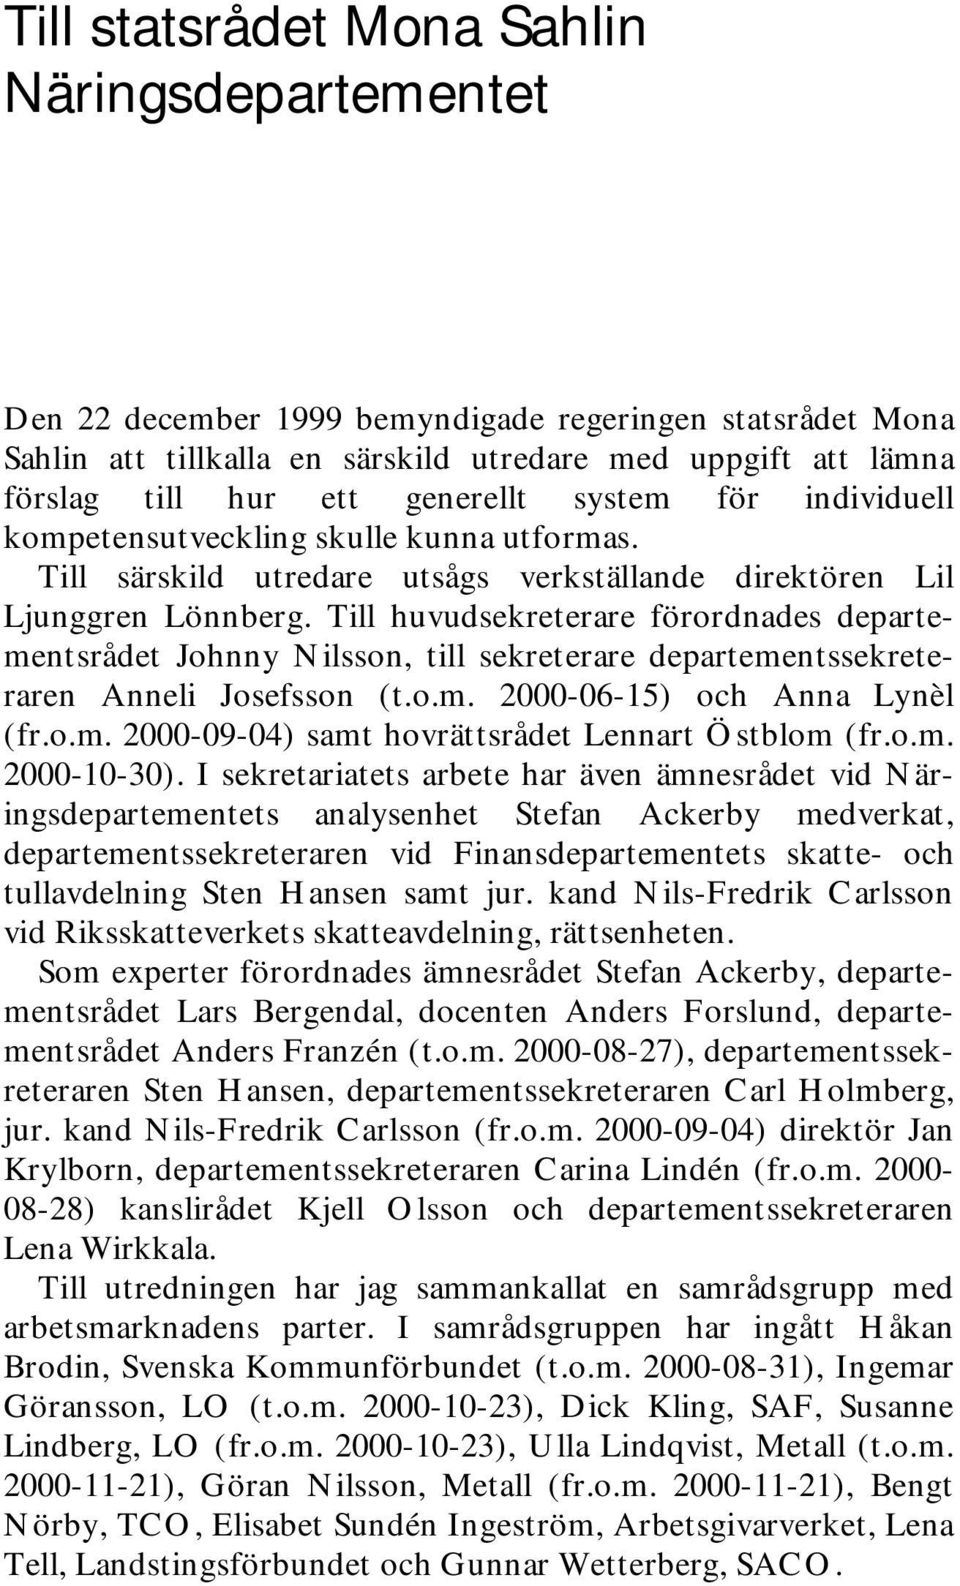 Till huvudsekreterare förordnades departementsrådet Johnny Nilsson, till sekreterare departementssekreteraren Anneli Josefsson (t.o.m. 2000-06-15) och Anna Lynèl (fr.o.m. 2000-09-04) samt hovrättsrådet Lennart Östblom (fr.